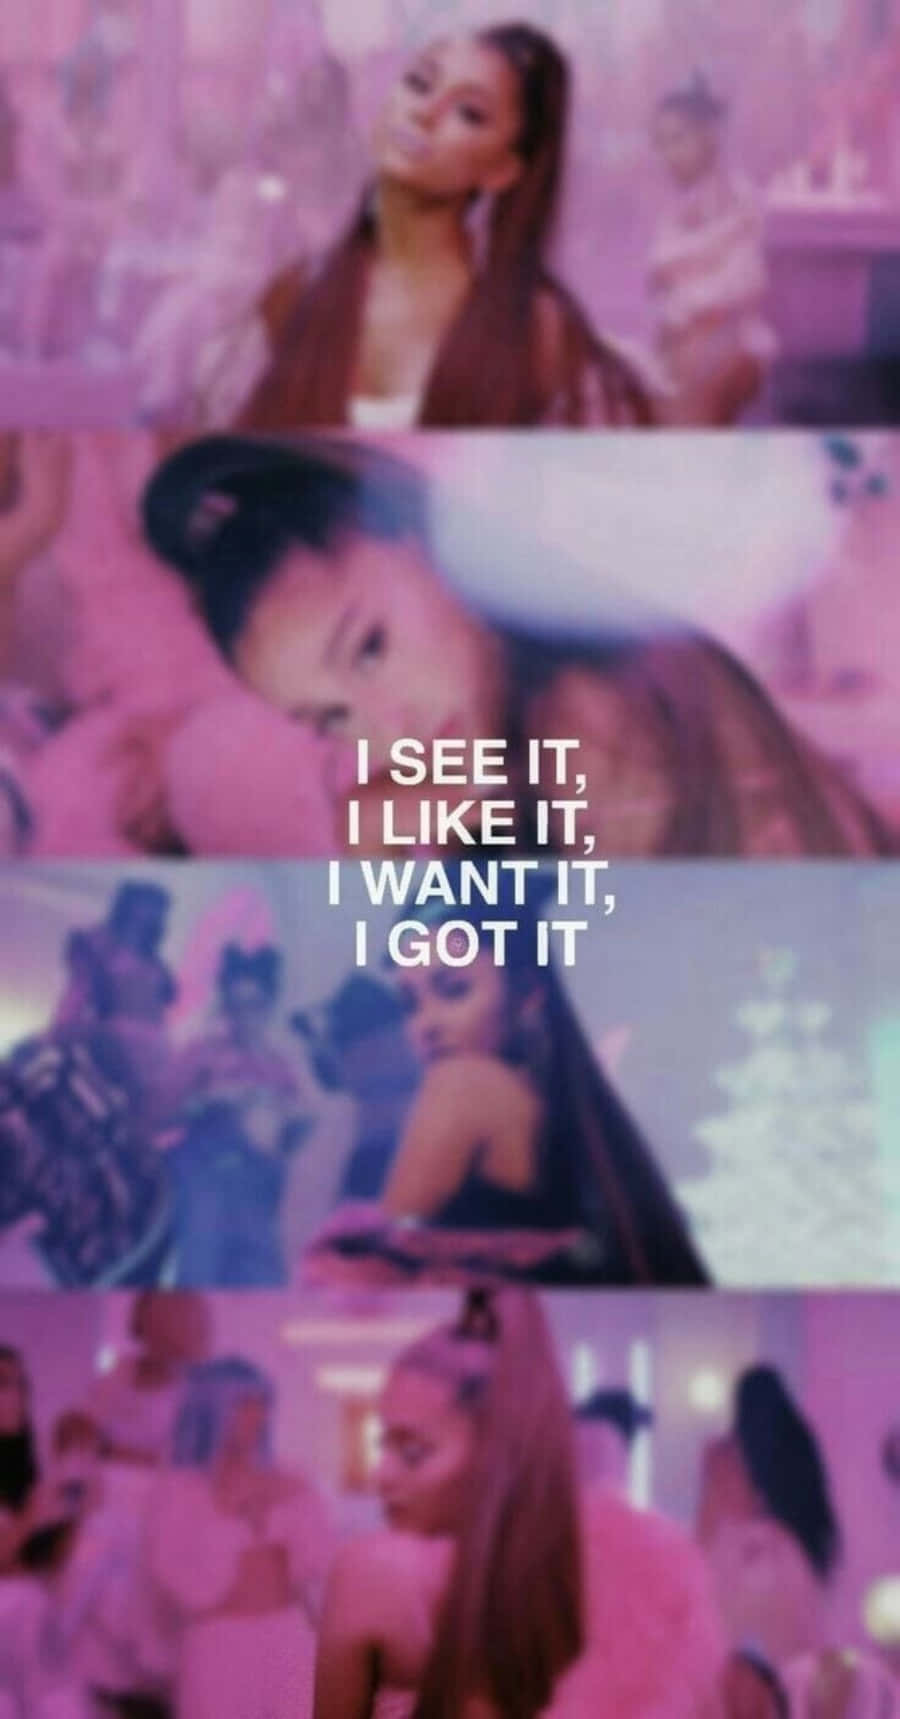 Denne tapet viser de 7 ringe af Ariana Grande's hit-sang Wallpaper